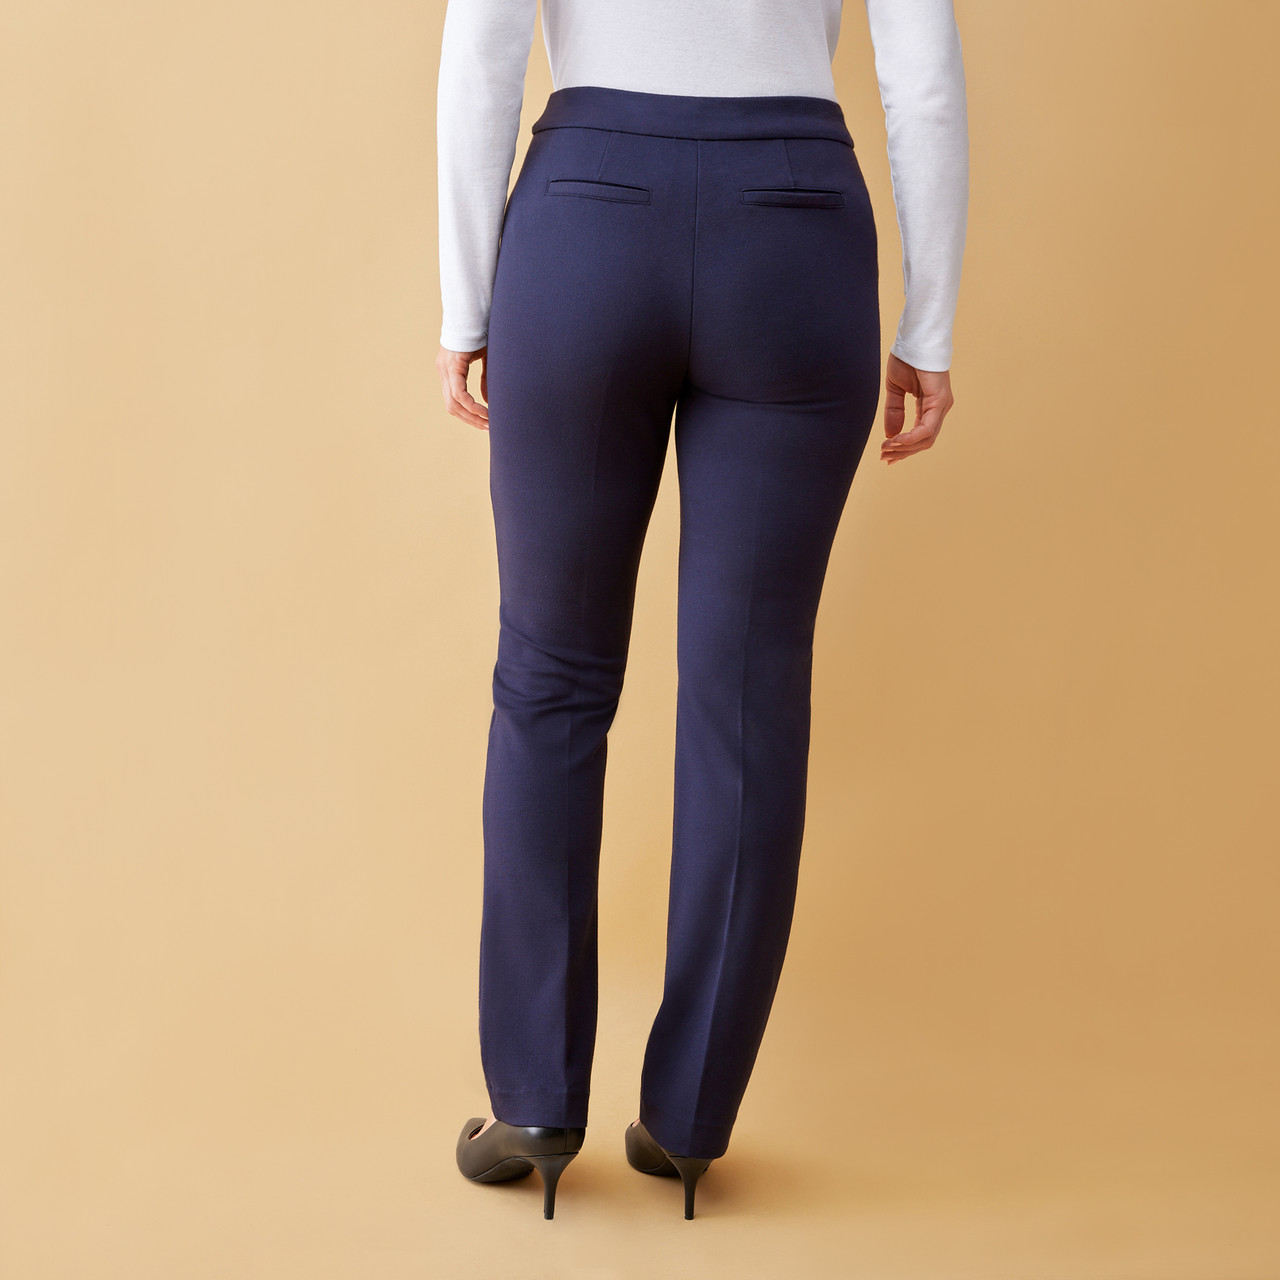 Comfy Chic Black Ponte Pants - Stretchy Women's Pants – Shop the Mint